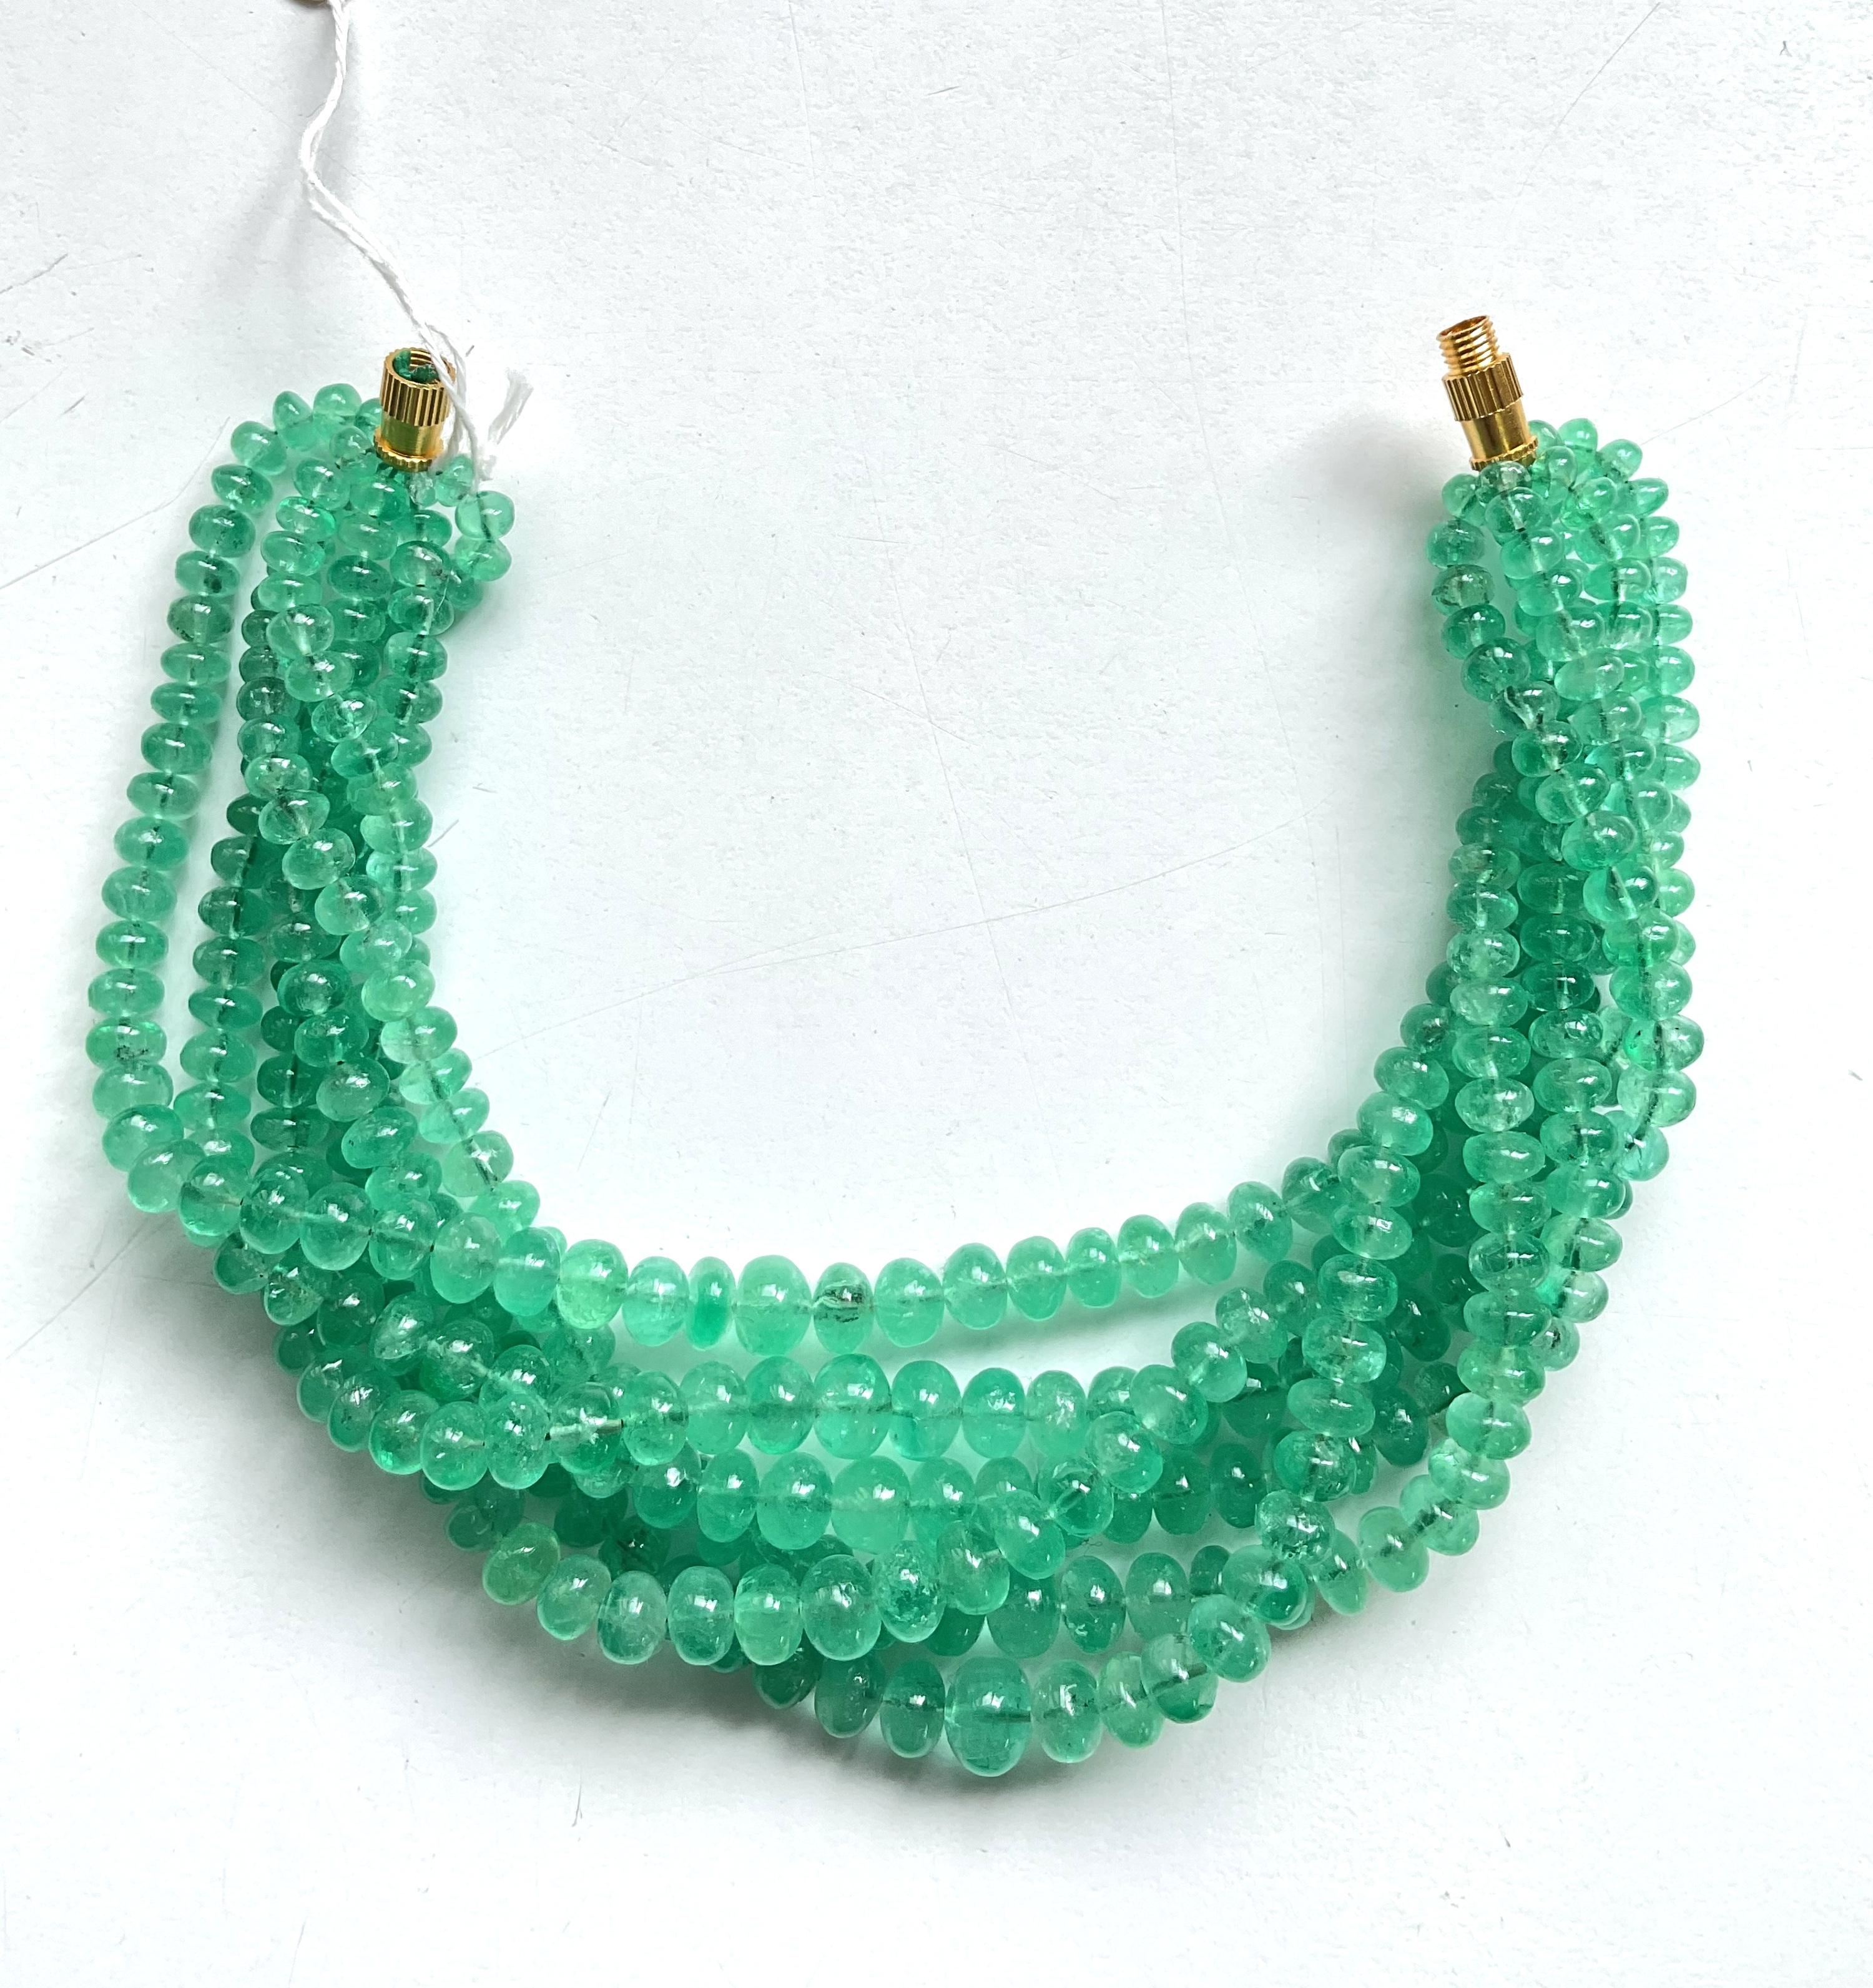 Kolumbianischer Smaragd Perlen für Schmuck Natürliche Edelsteine
Edelstein - Smaragd
Gewicht - 218,70 Karat
Form - Perlen
Größe - 4 bis 7 MM
Menge - 6 Zeilen